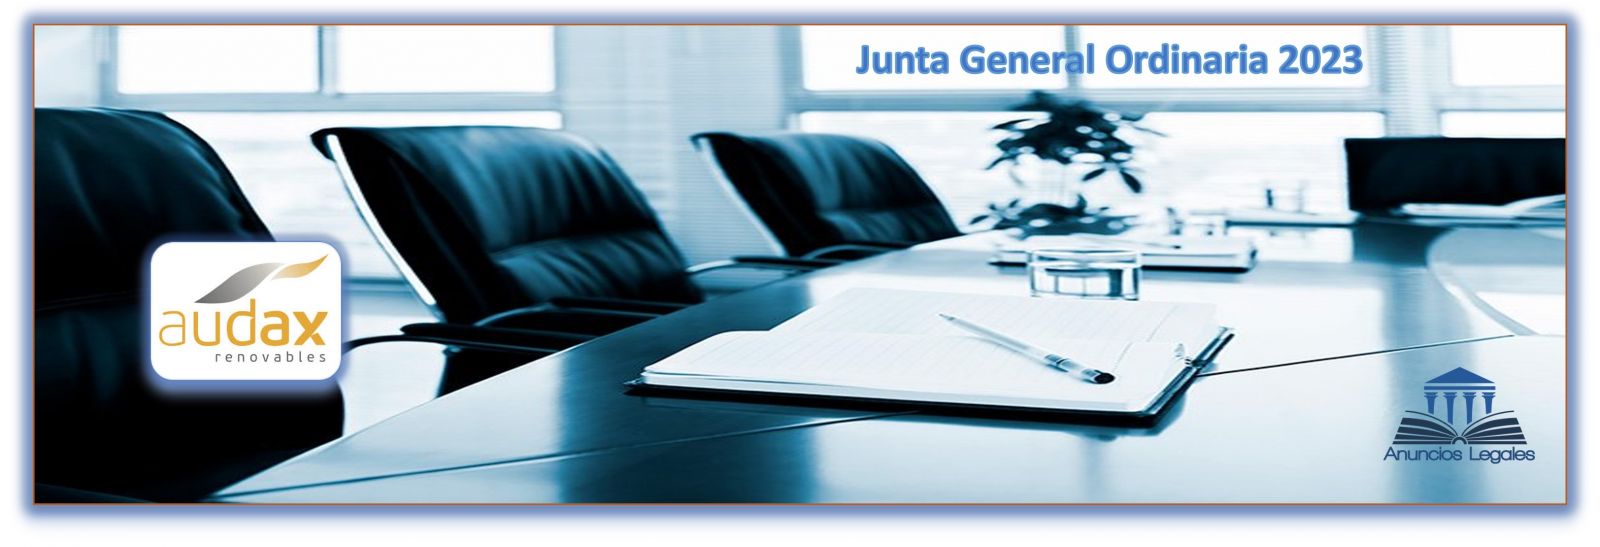 La sociedad Audax Renovables anuncia Junta General Ordinaria de Accionistas 2023